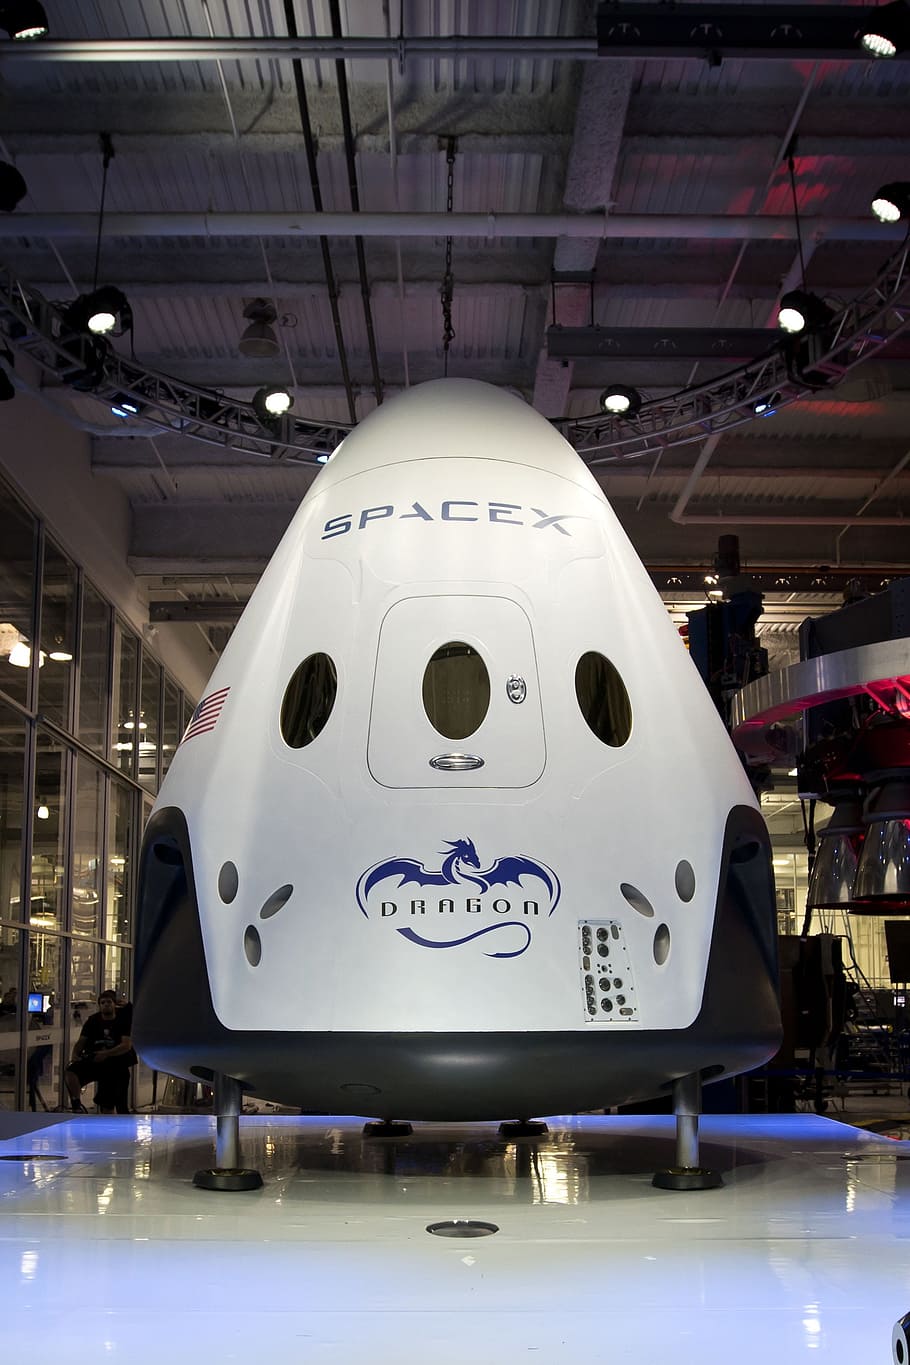 Космический корабль, Spacex, космический модуль, капсула, наука, технология, разведка, самолетный ангар, аэрокосмическая промышленность, воздушный транспорт